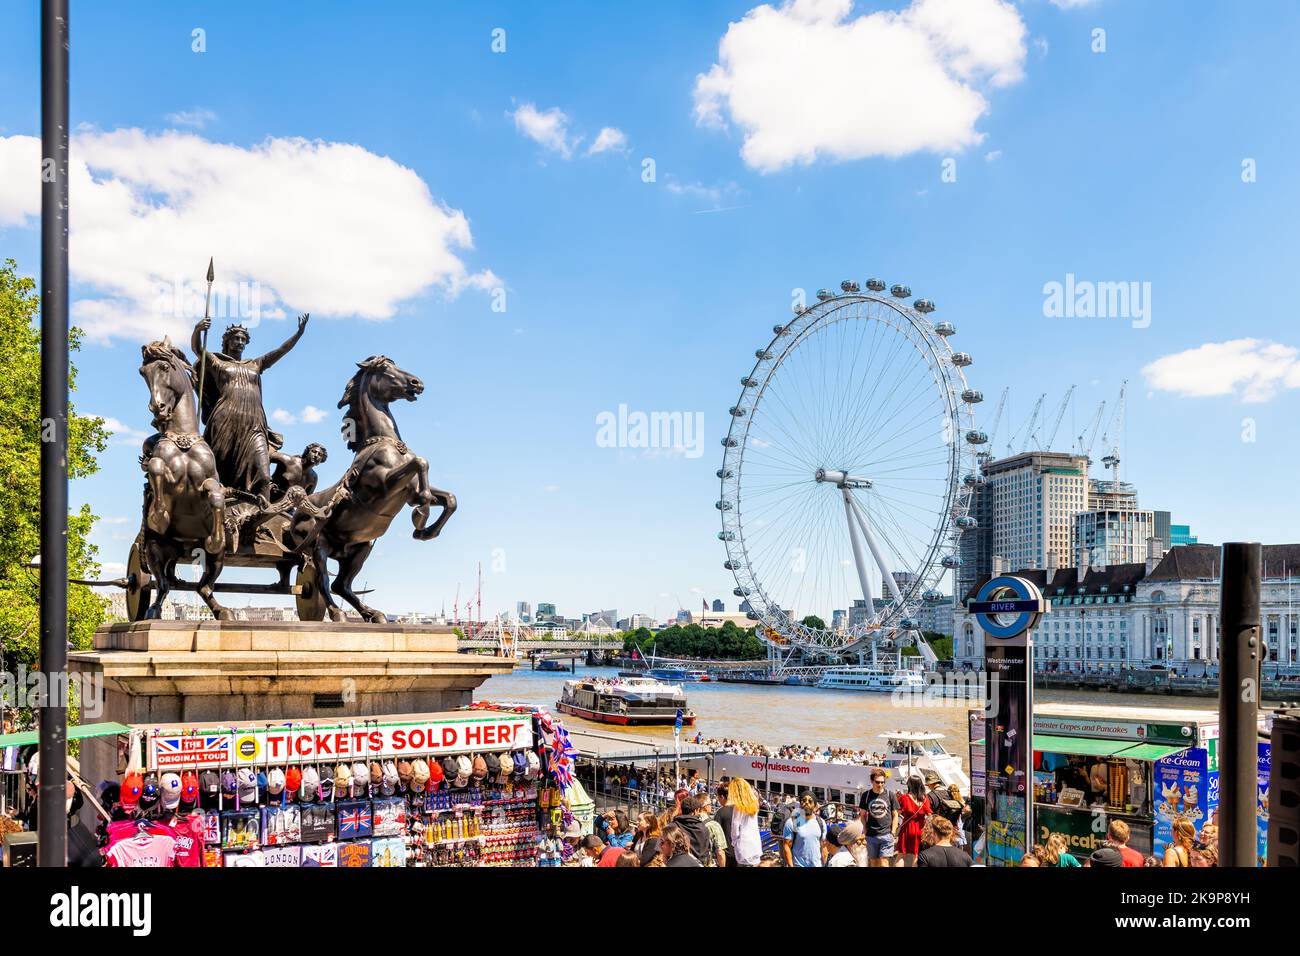 London, Großbritannien - 22. Juni 2018: Westminster Pier Ticket Kiosk für Bootstour auf der Themse, Millennium Eye Wheel, Boudiccan Rebellion Statue Stockfoto